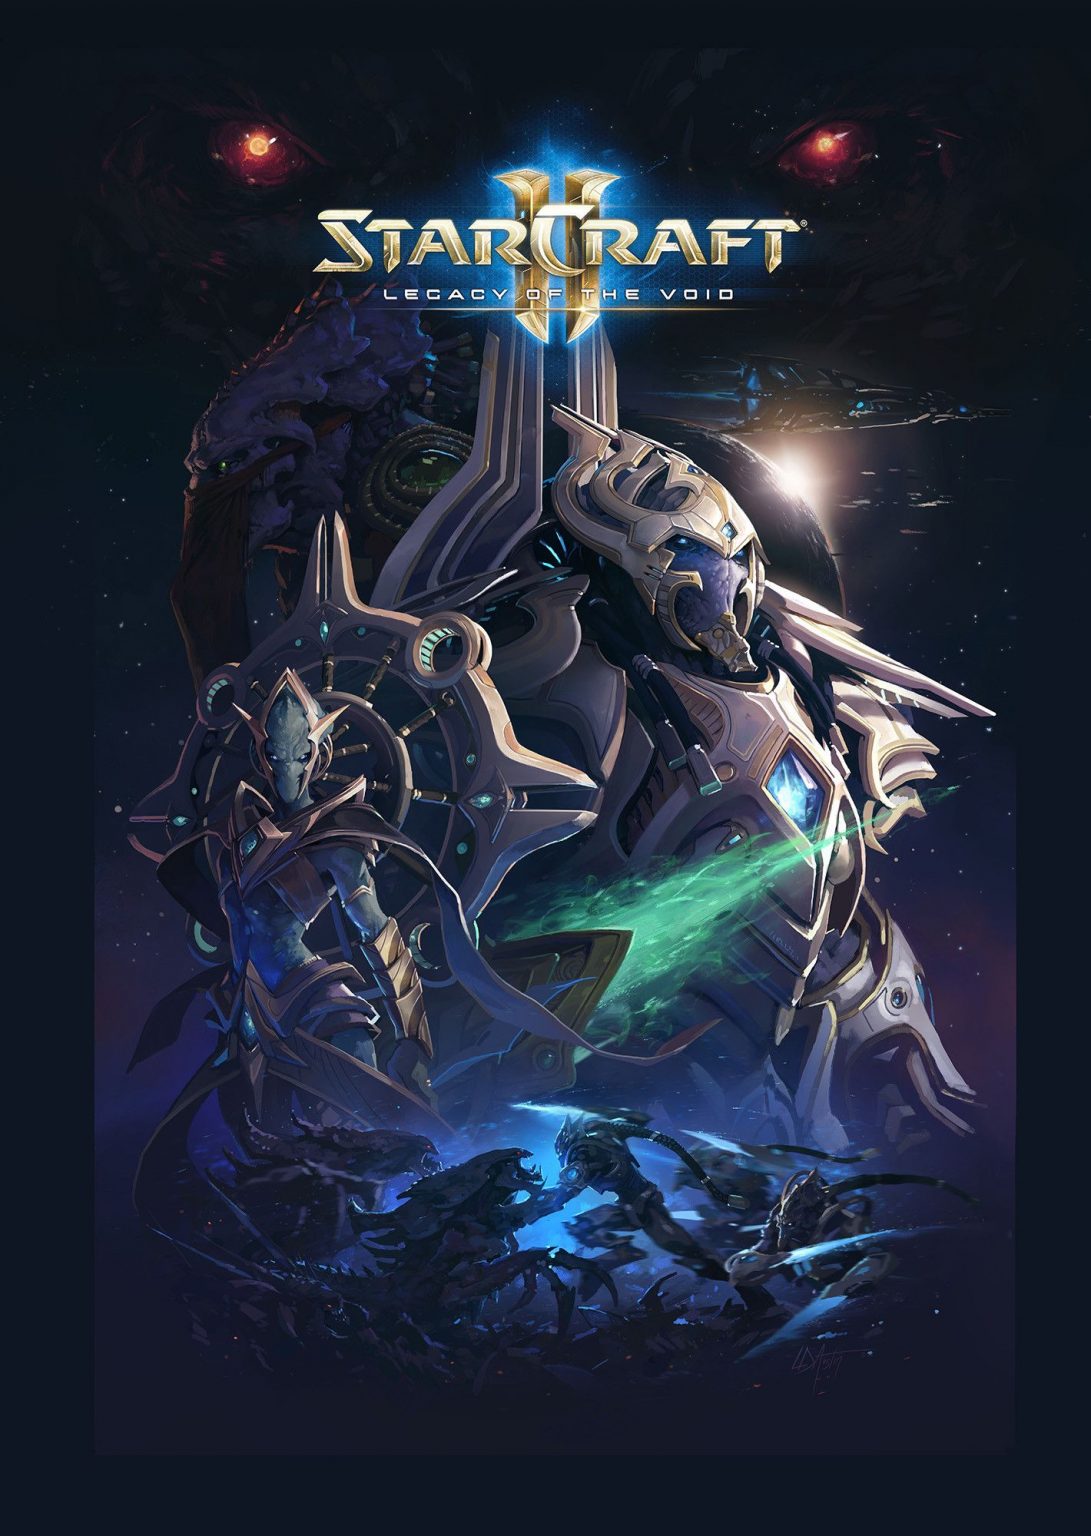 download starcraft 2 free full game pc